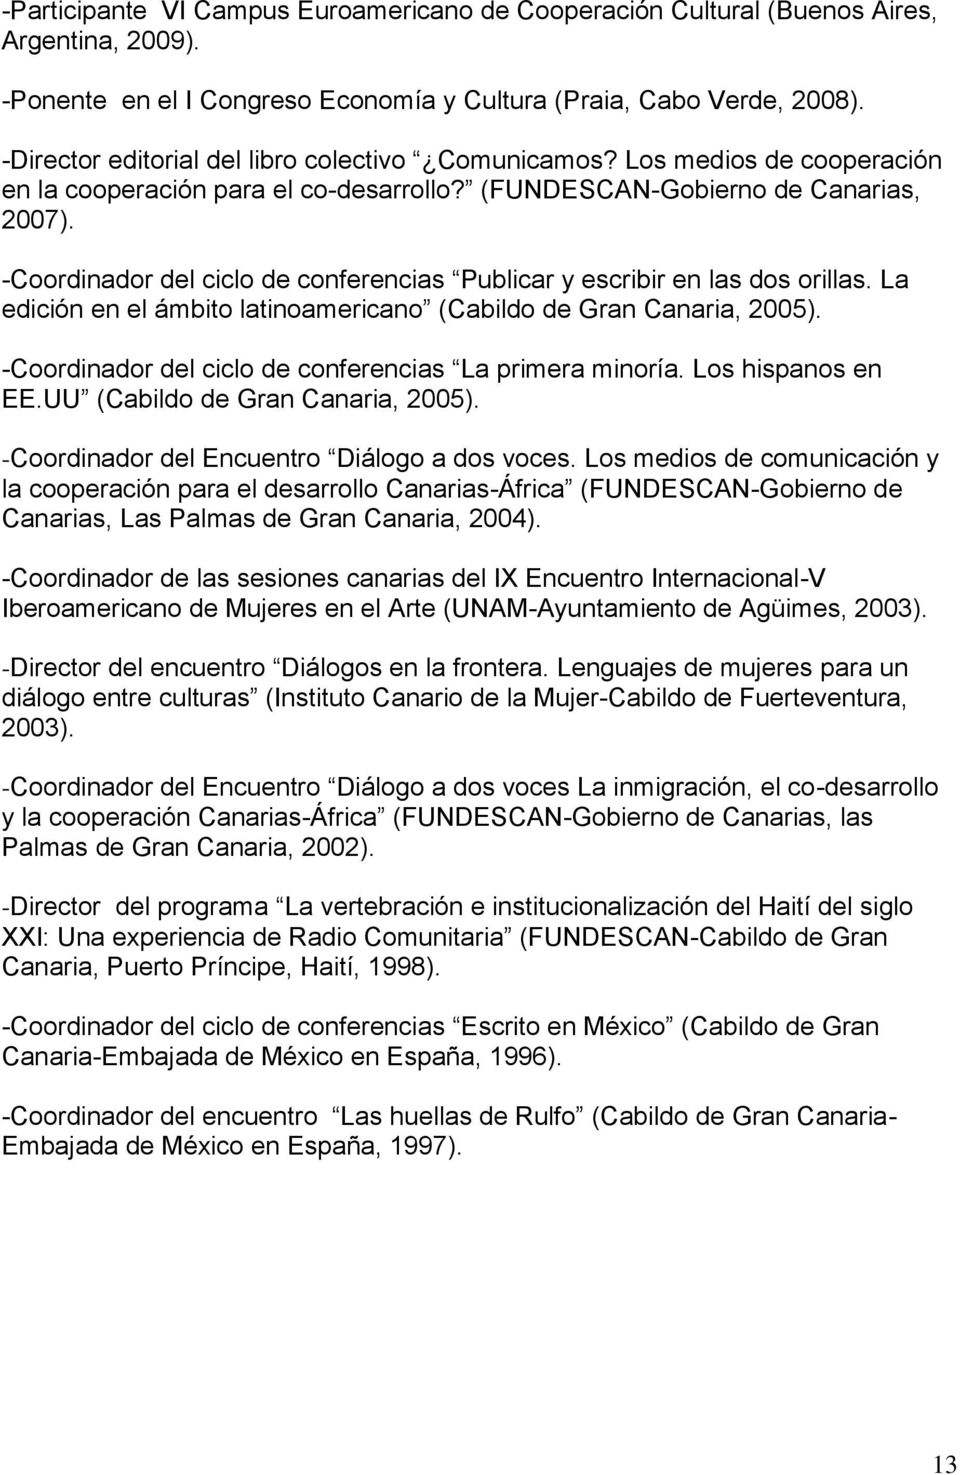 -Coordinador del ciclo de conferencias Publicar y escribir en las dos orillas. La edición en el ámbito latinoamericano (Cabildo de Gran Canaria, 2005).